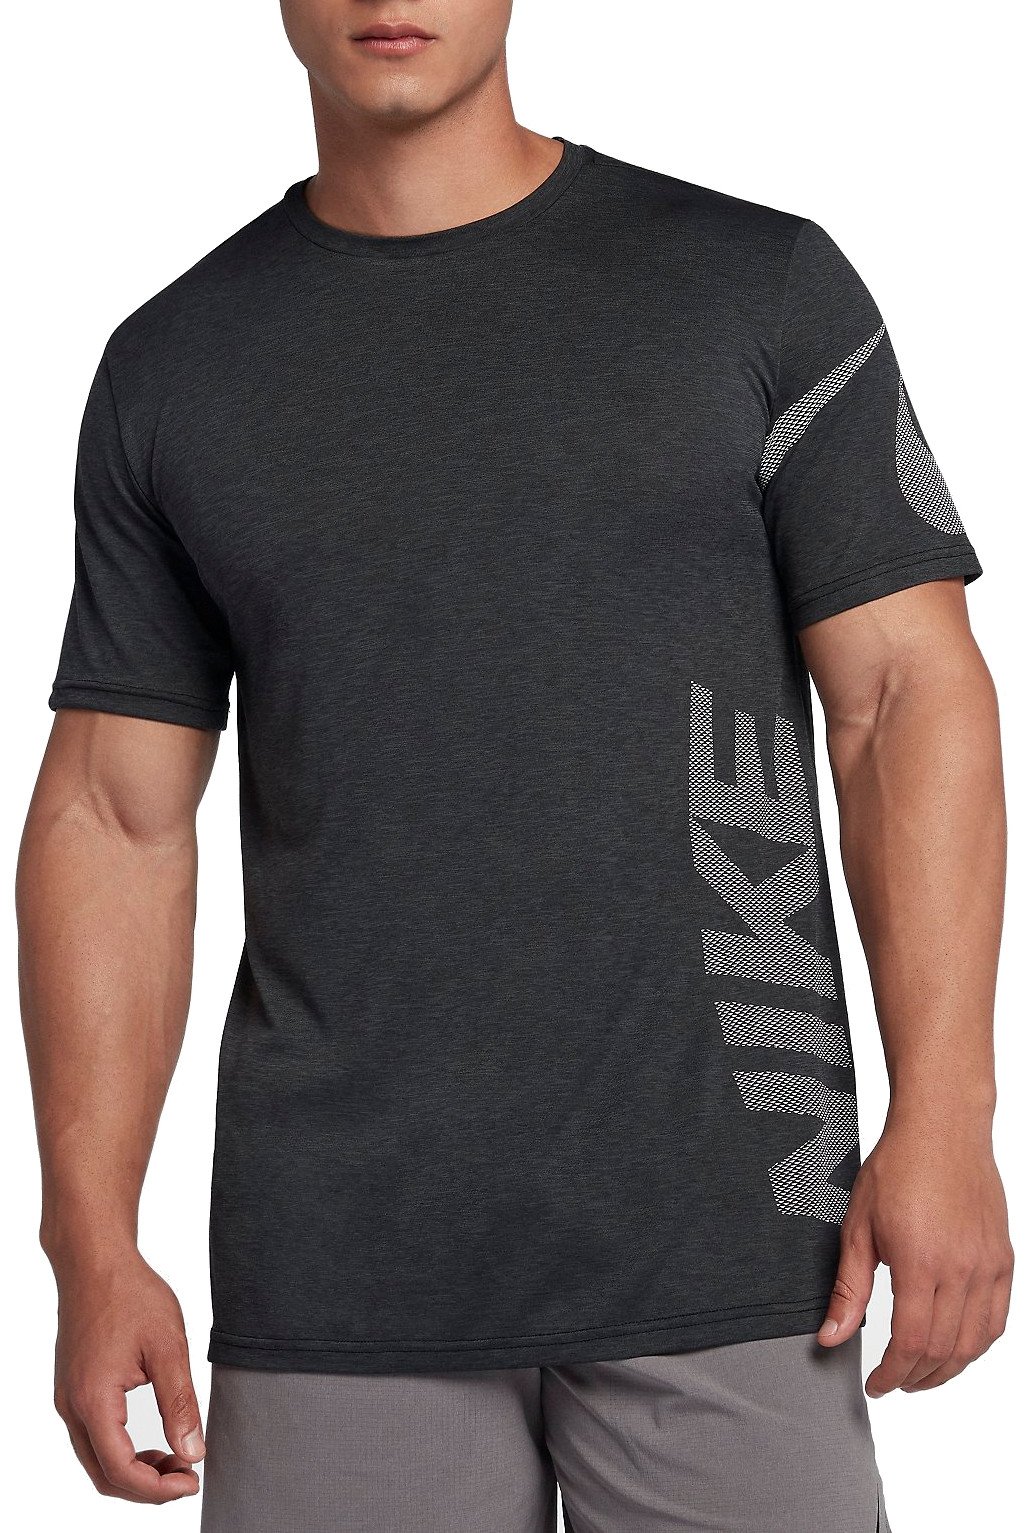 Pánské tréninkové tričko s krátkým rukávem Nike Breathe